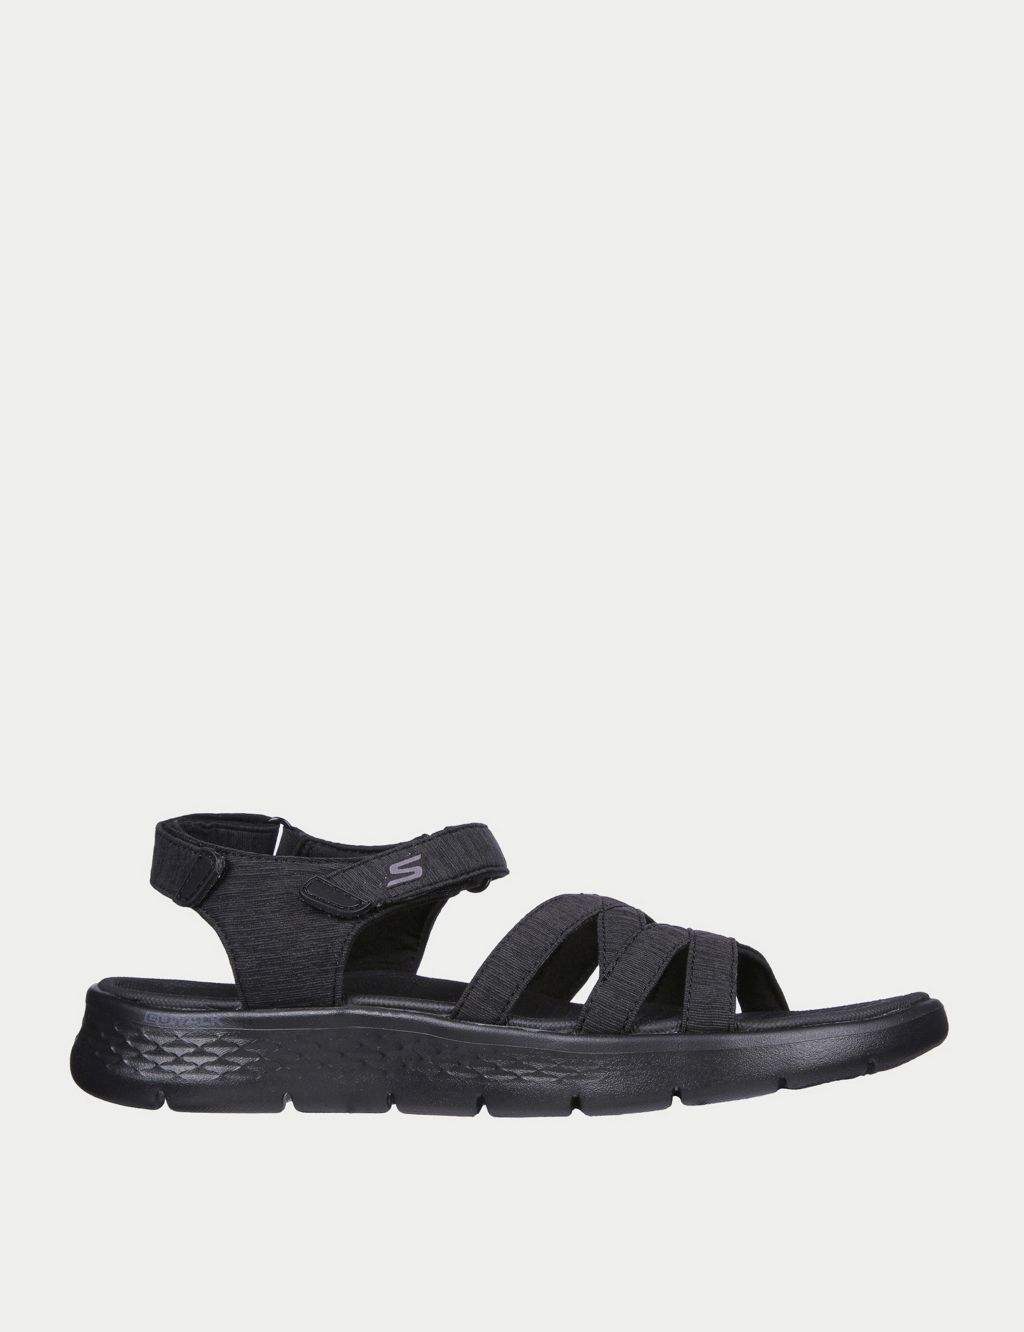 GOwalk Flex Sunshine Sandals image 1